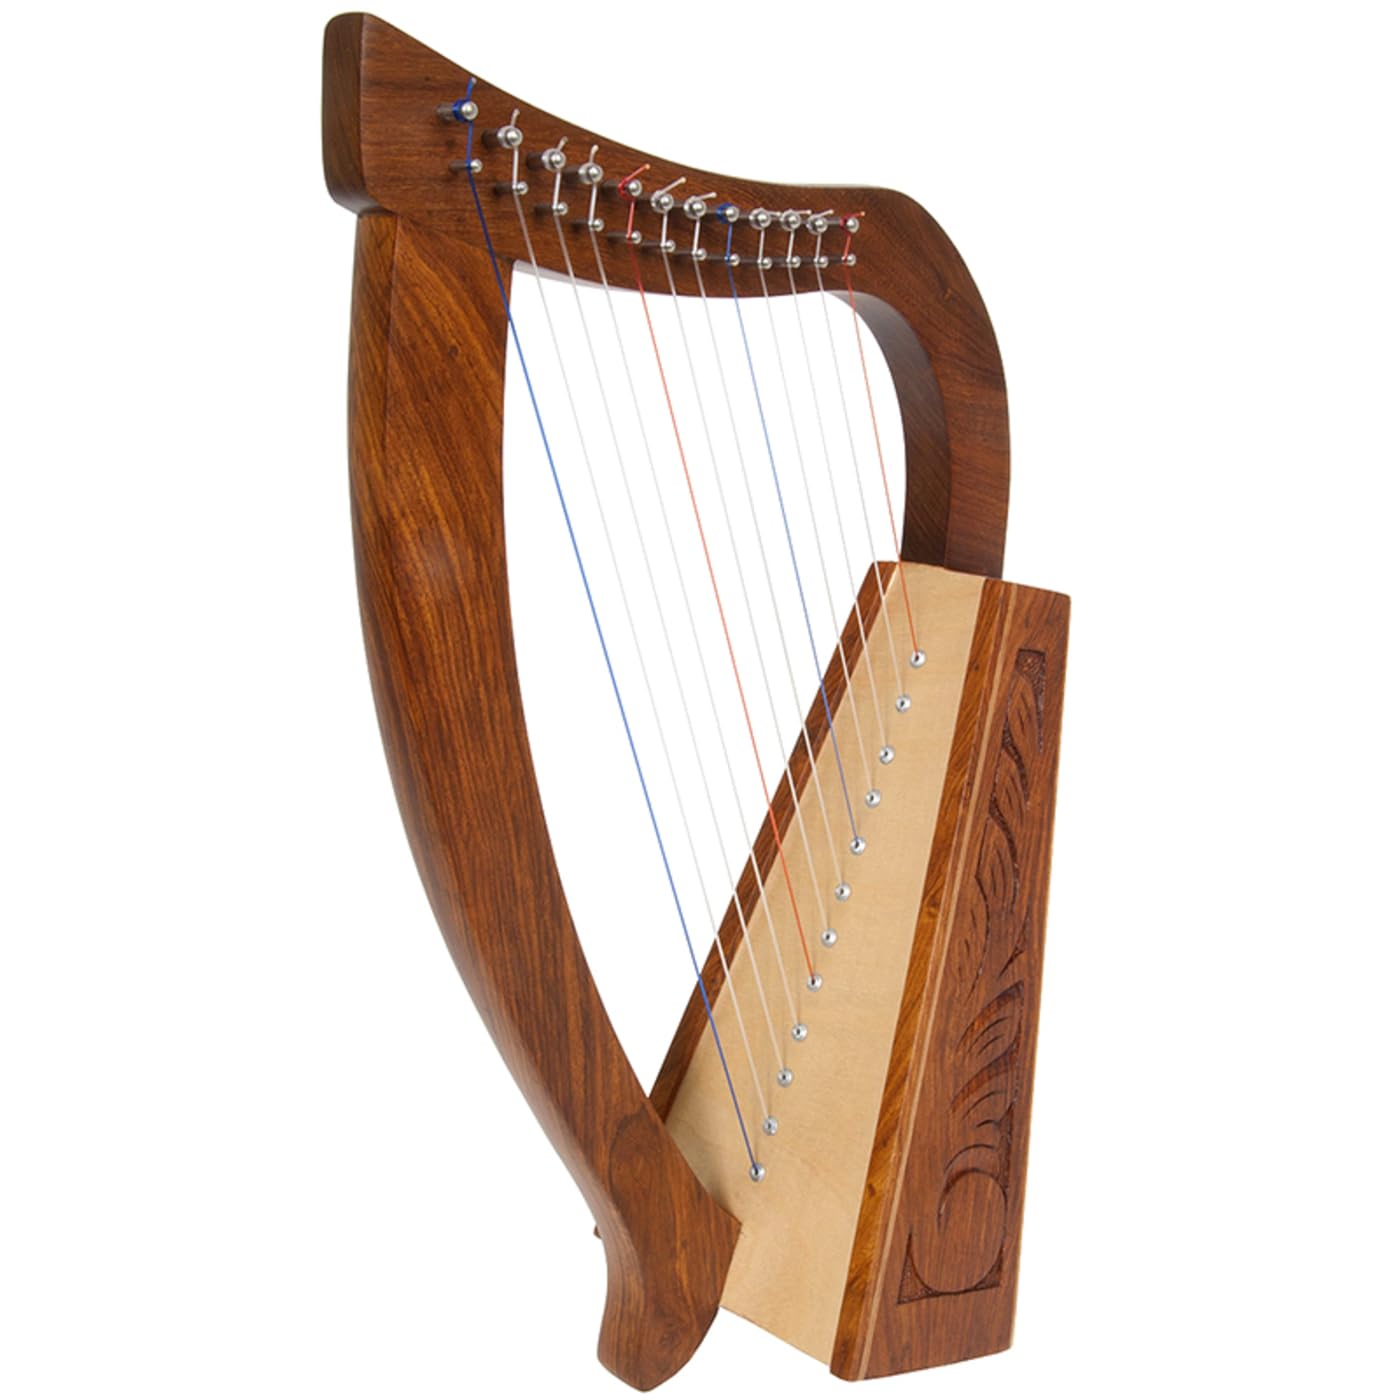 Uzman - Keltische Harfe 12 Saiten - inkl. Stimmschlüssel, Ersatzsaiten - Baby-Harfe Optimal für Einsteiger - Anfängerharfe für Kinder - Hand Made